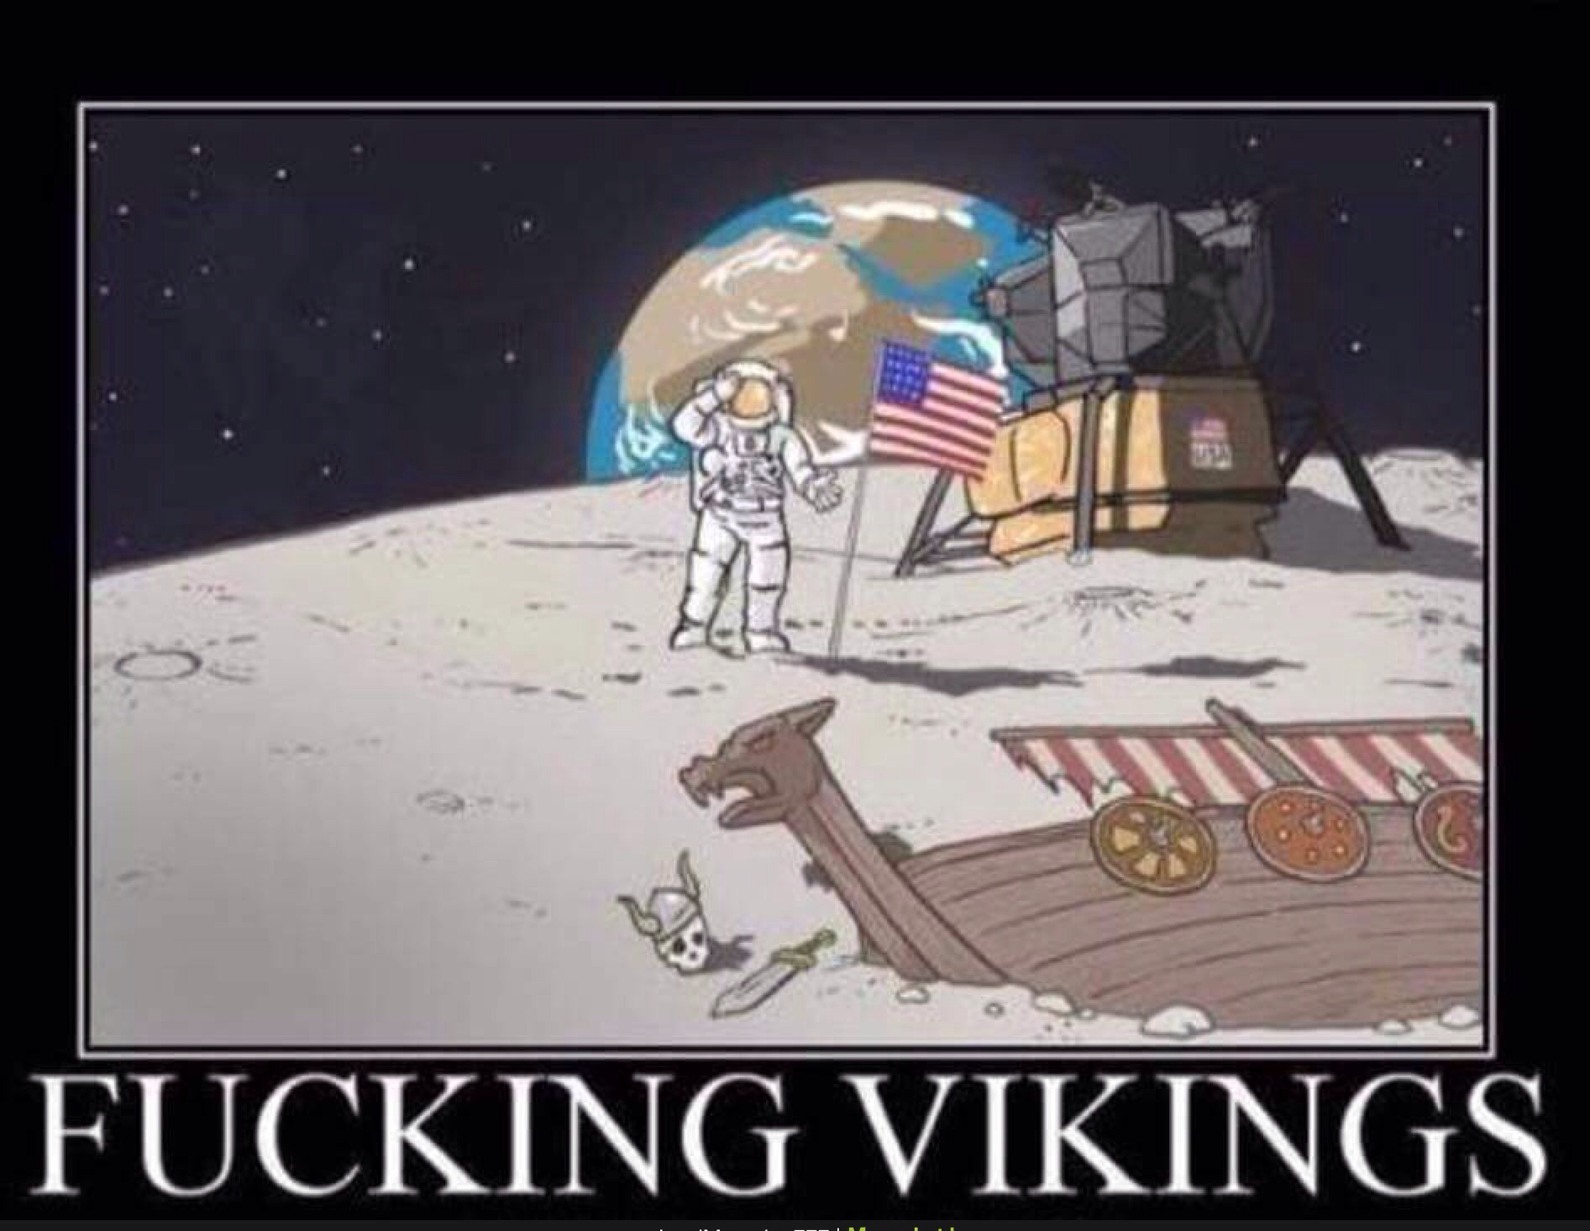 Vikings - meme